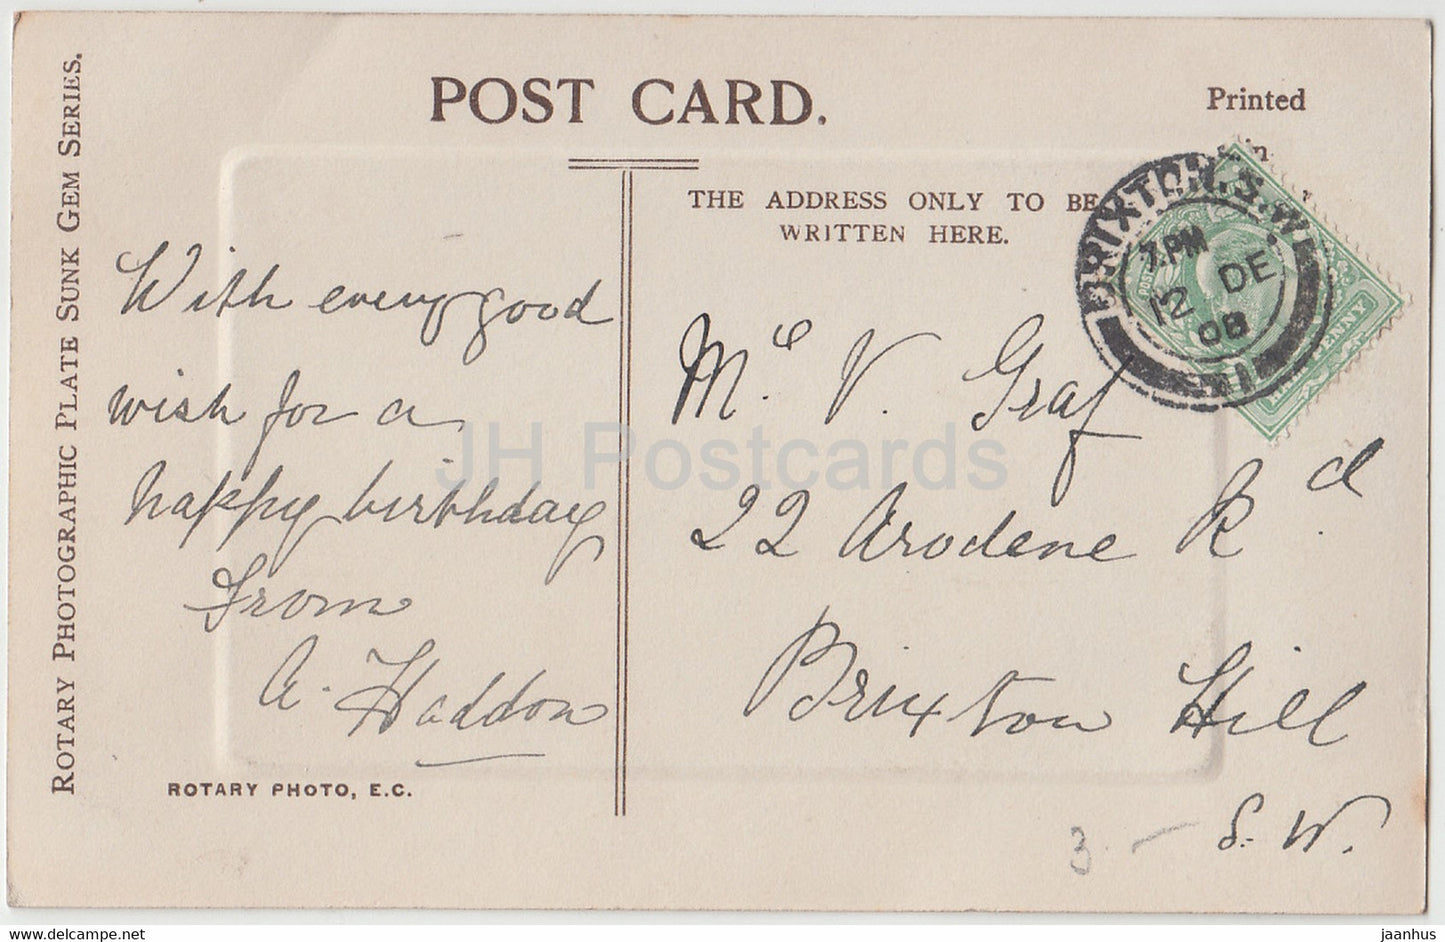 Carte de vœux d'anniversaire - Many Happy Returns - chaton - P 1737 - carte postale ancienne - 1908 - Royaume-Uni - utilisé